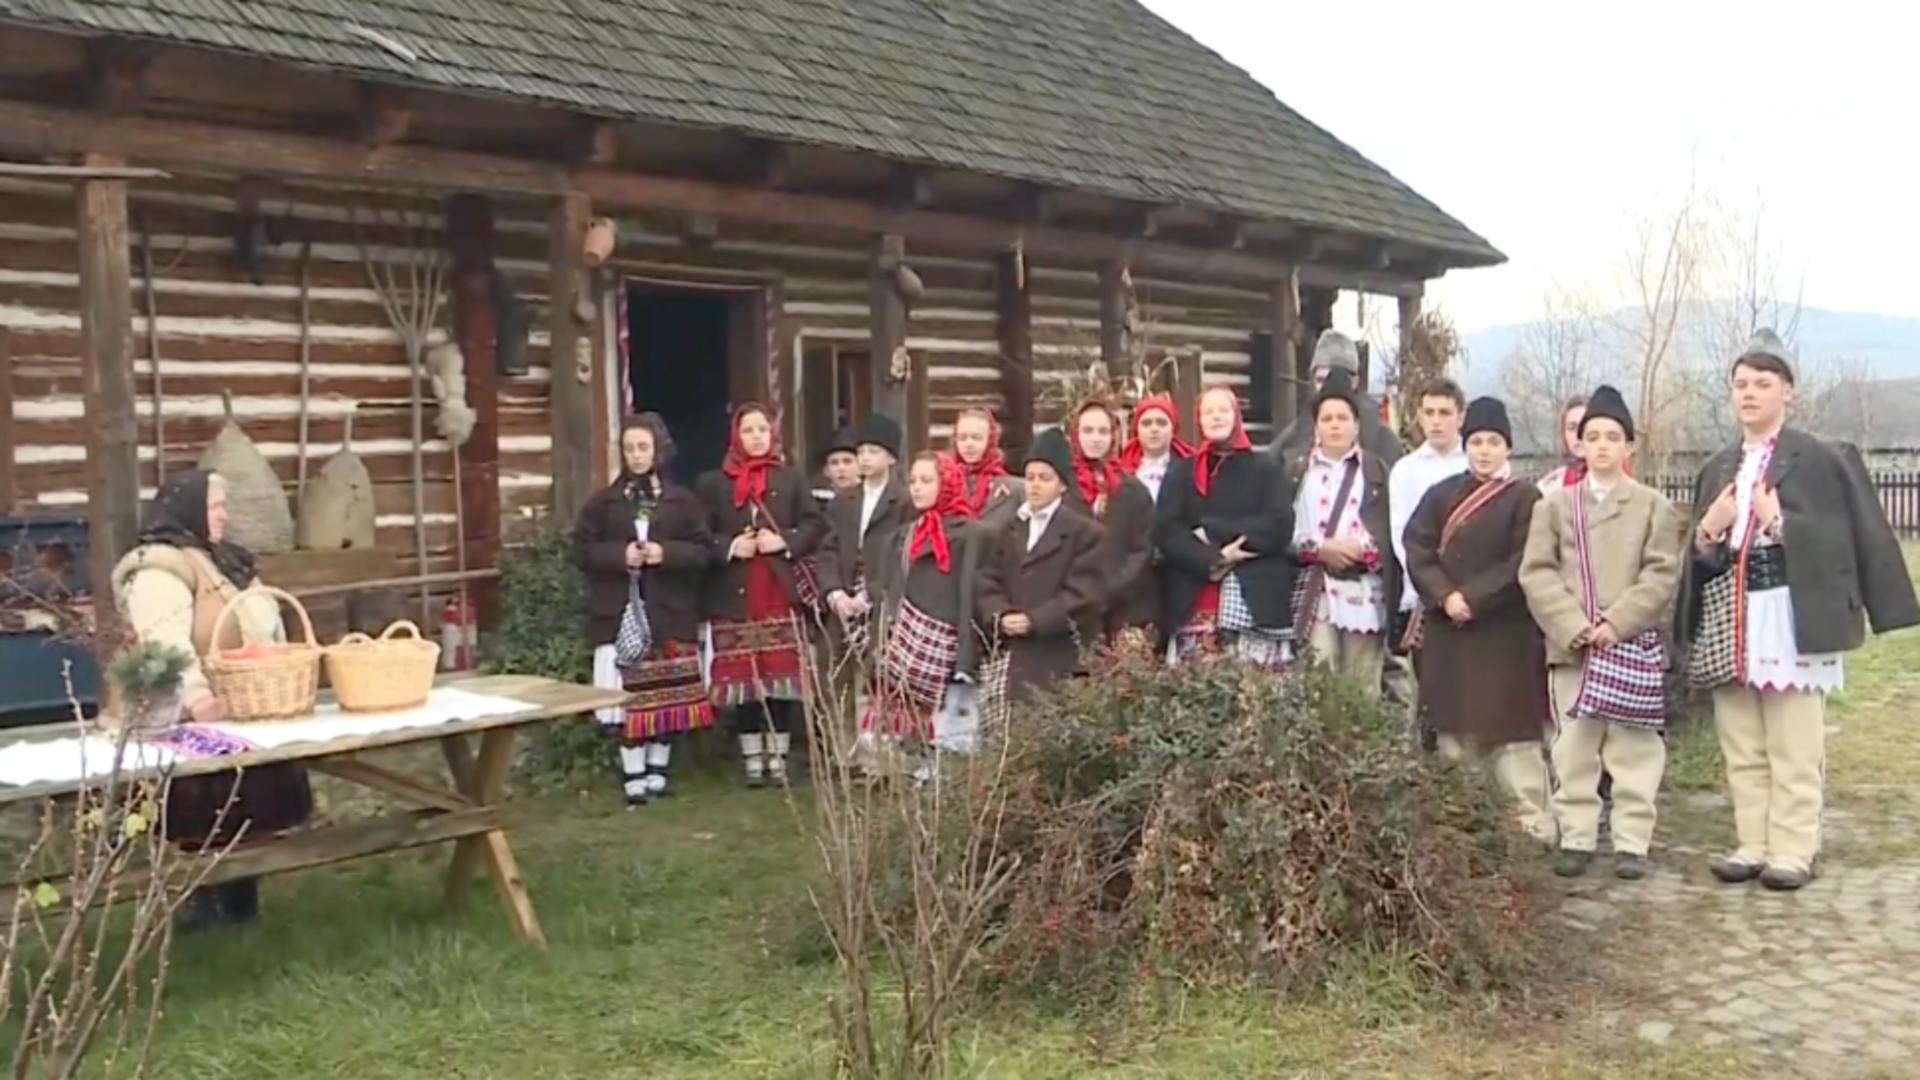 Magie în Țara Lăpușului, de Crăciun: tinerii duc tradiția mai departe în Maramureș